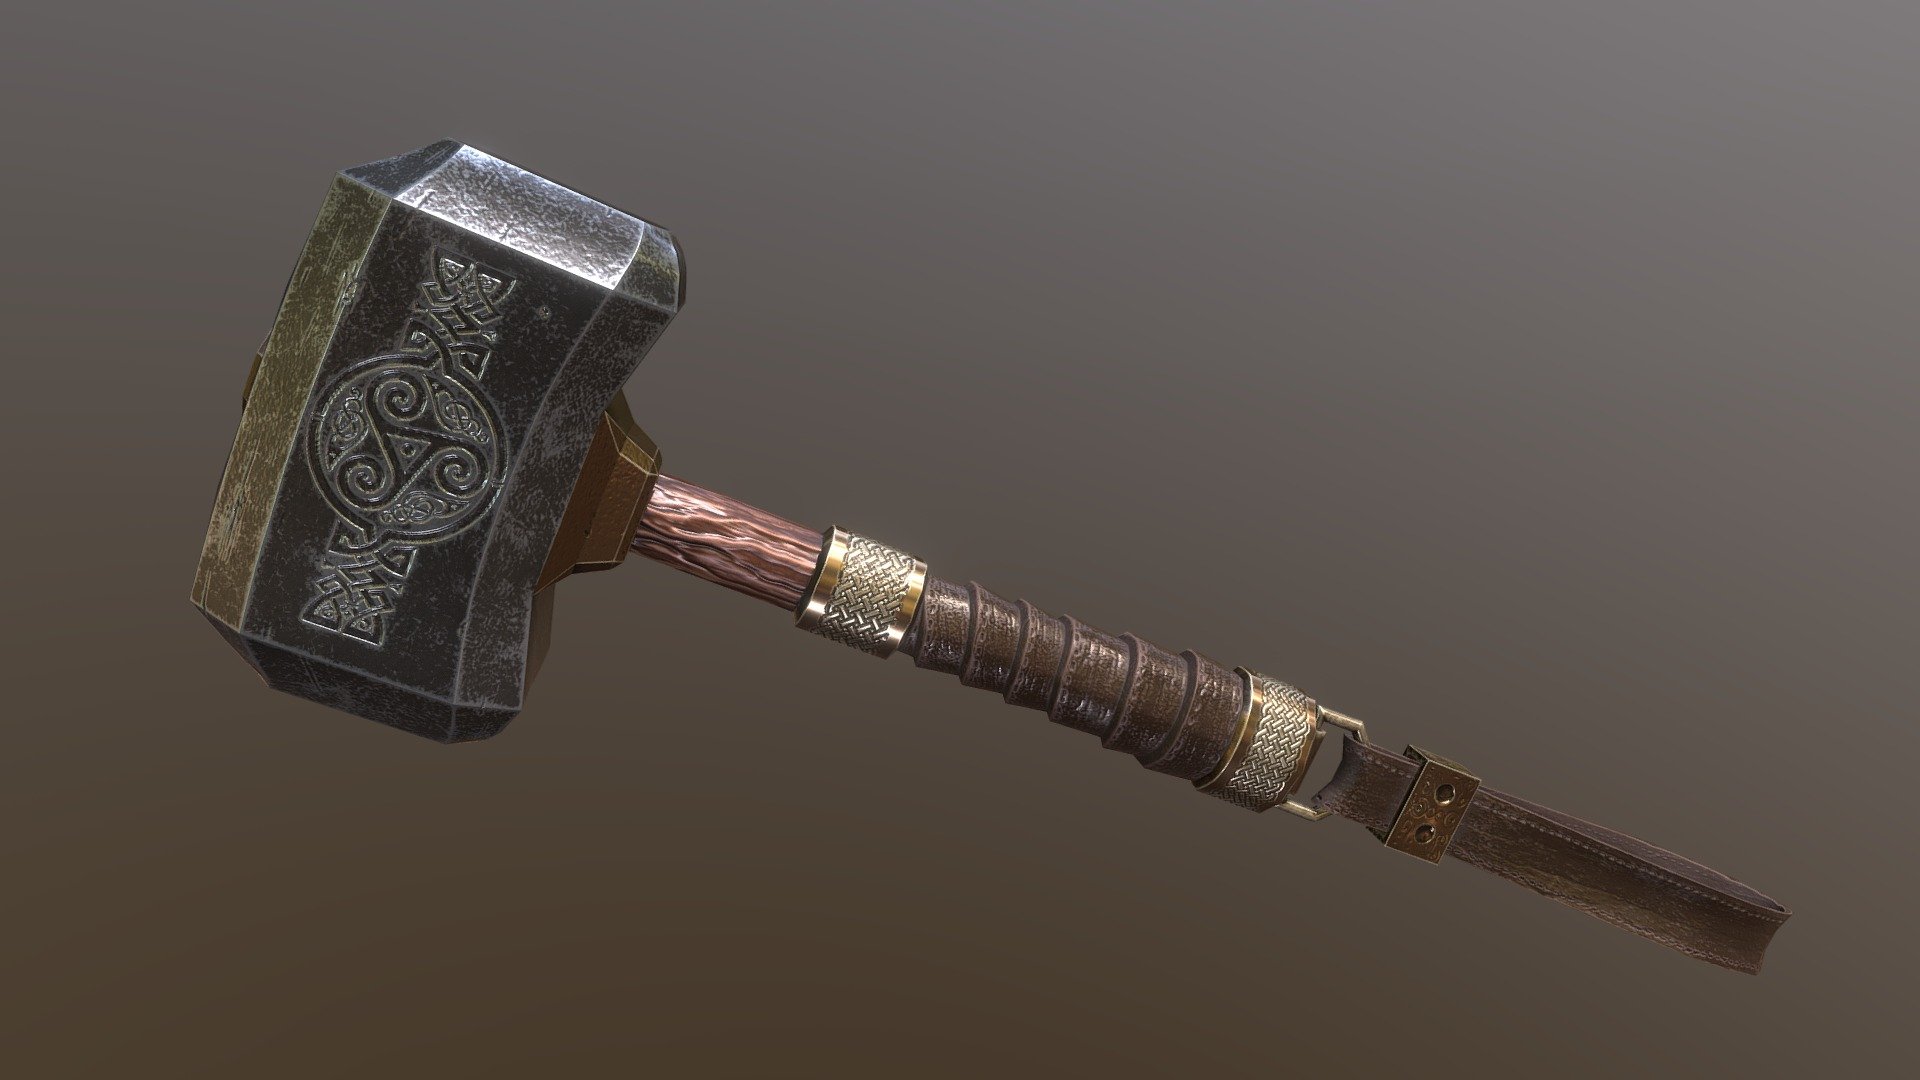 Thunder god hammer - Mjolnir - 3D model by CMarzoS 3d model